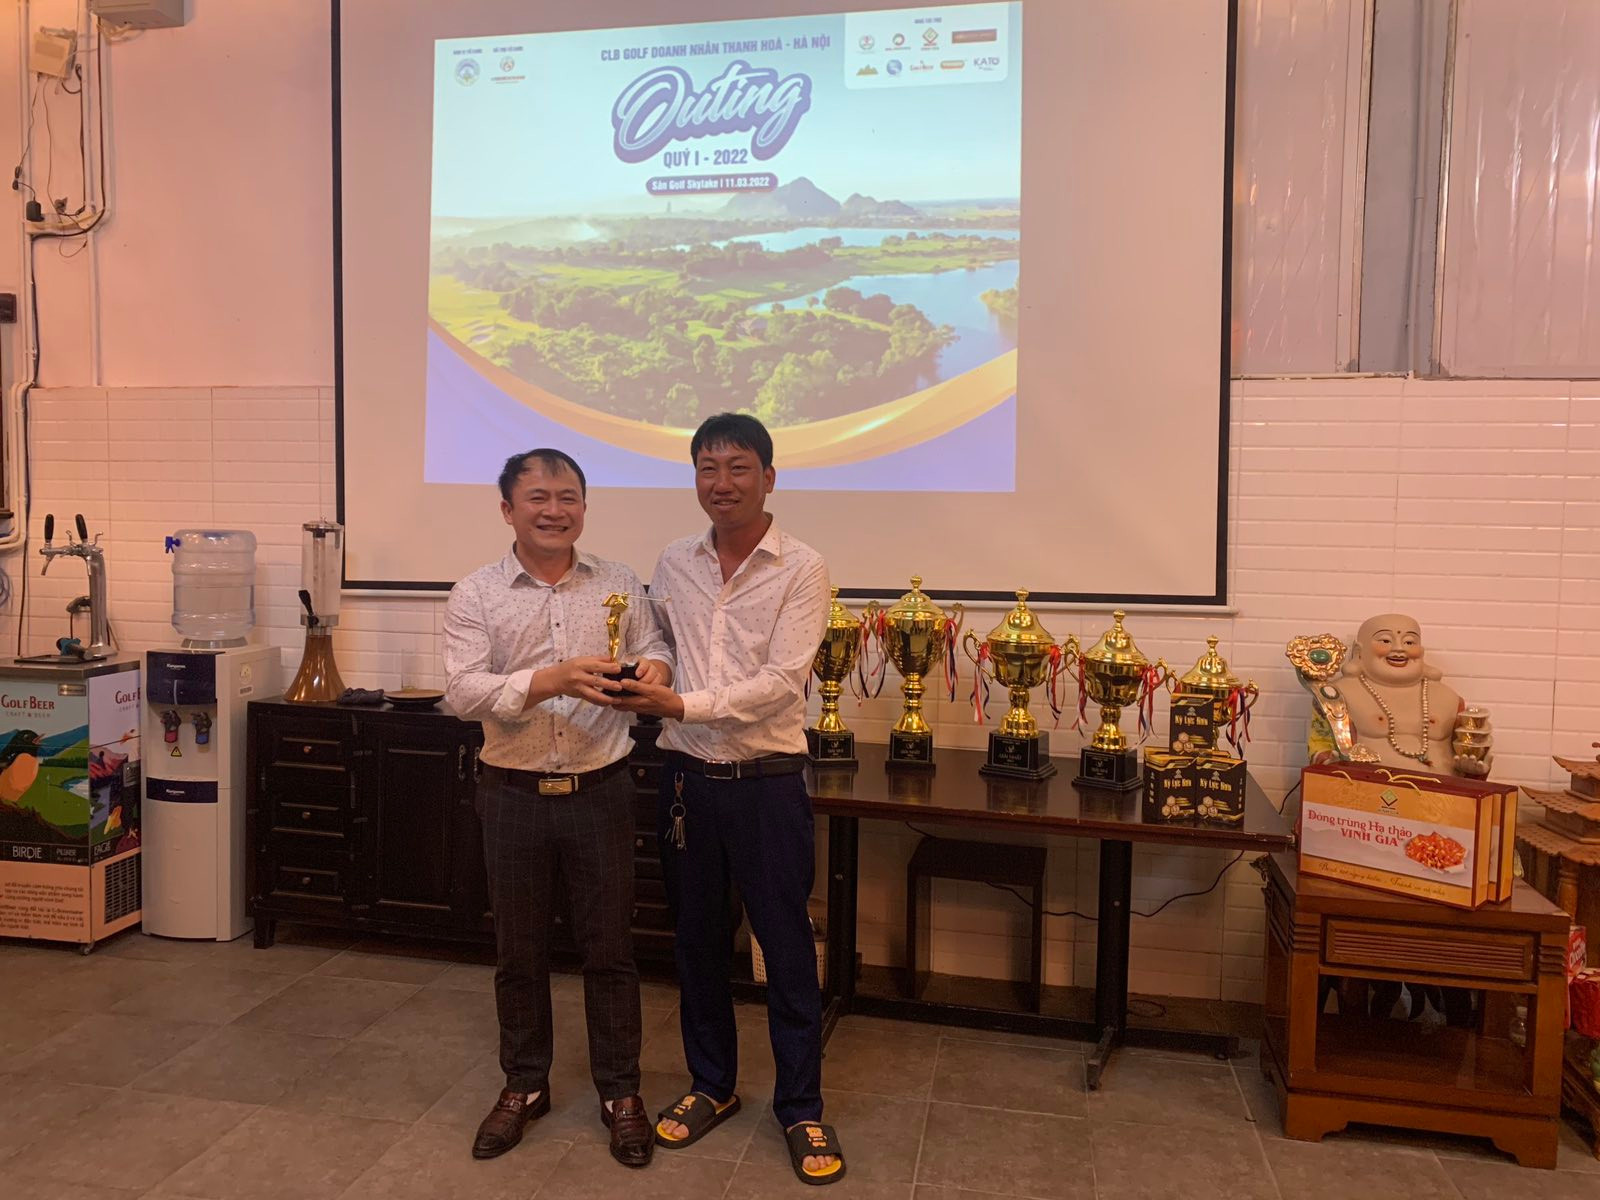 CLB Doanh nhân Thanh Hóa tại Hà Nội tưng bừng tổ chức Outing Quý 1/2022 - Ảnh 6.